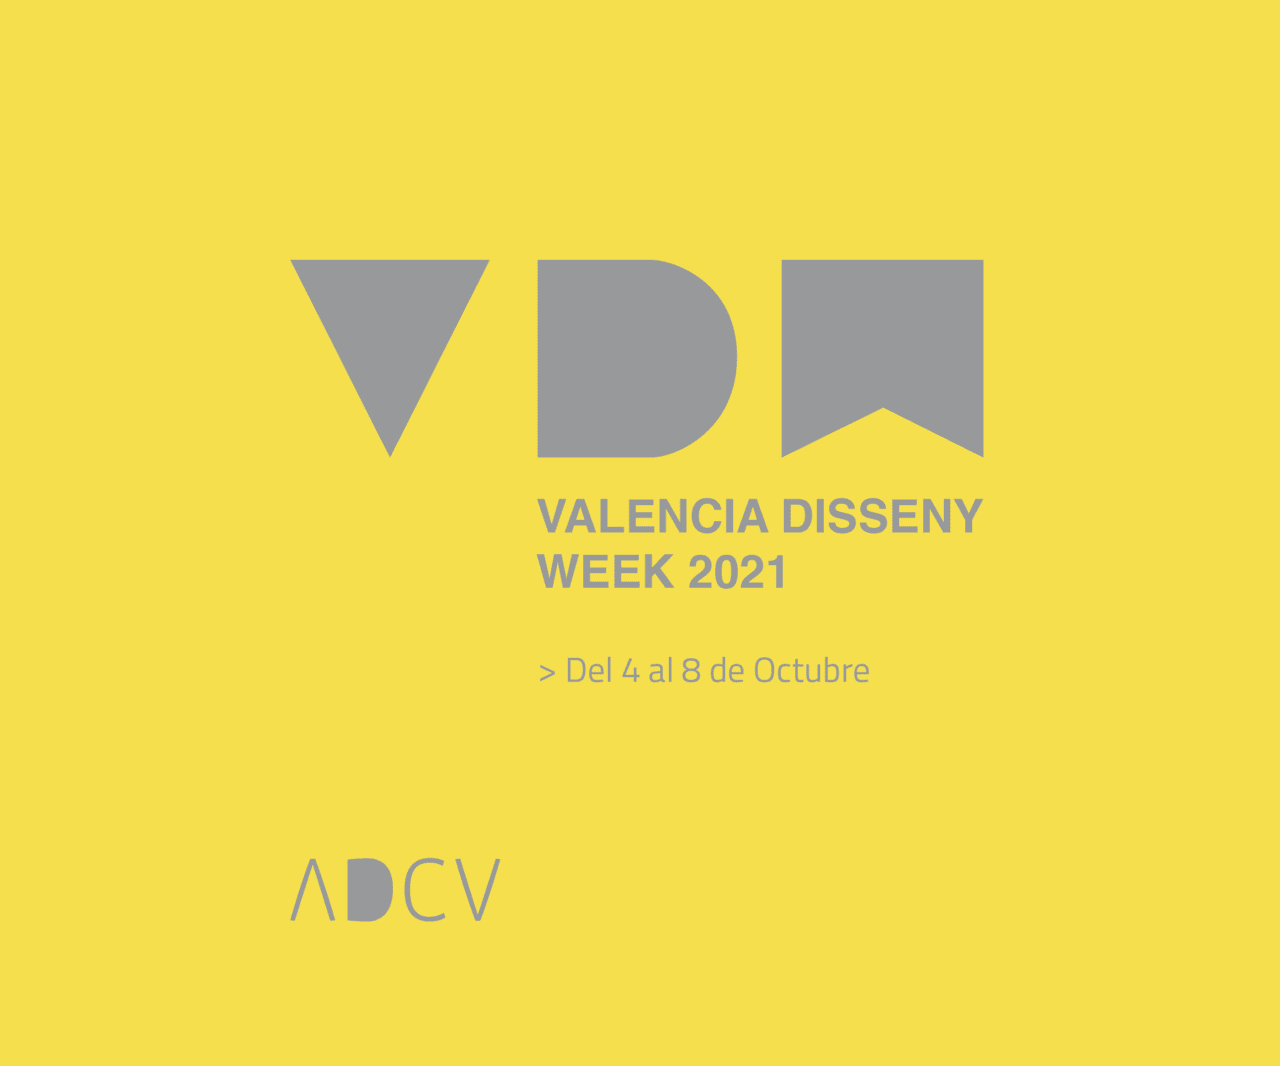 La XII València Disseny Week llena las calles de diseño del 4 al 8 de octubre